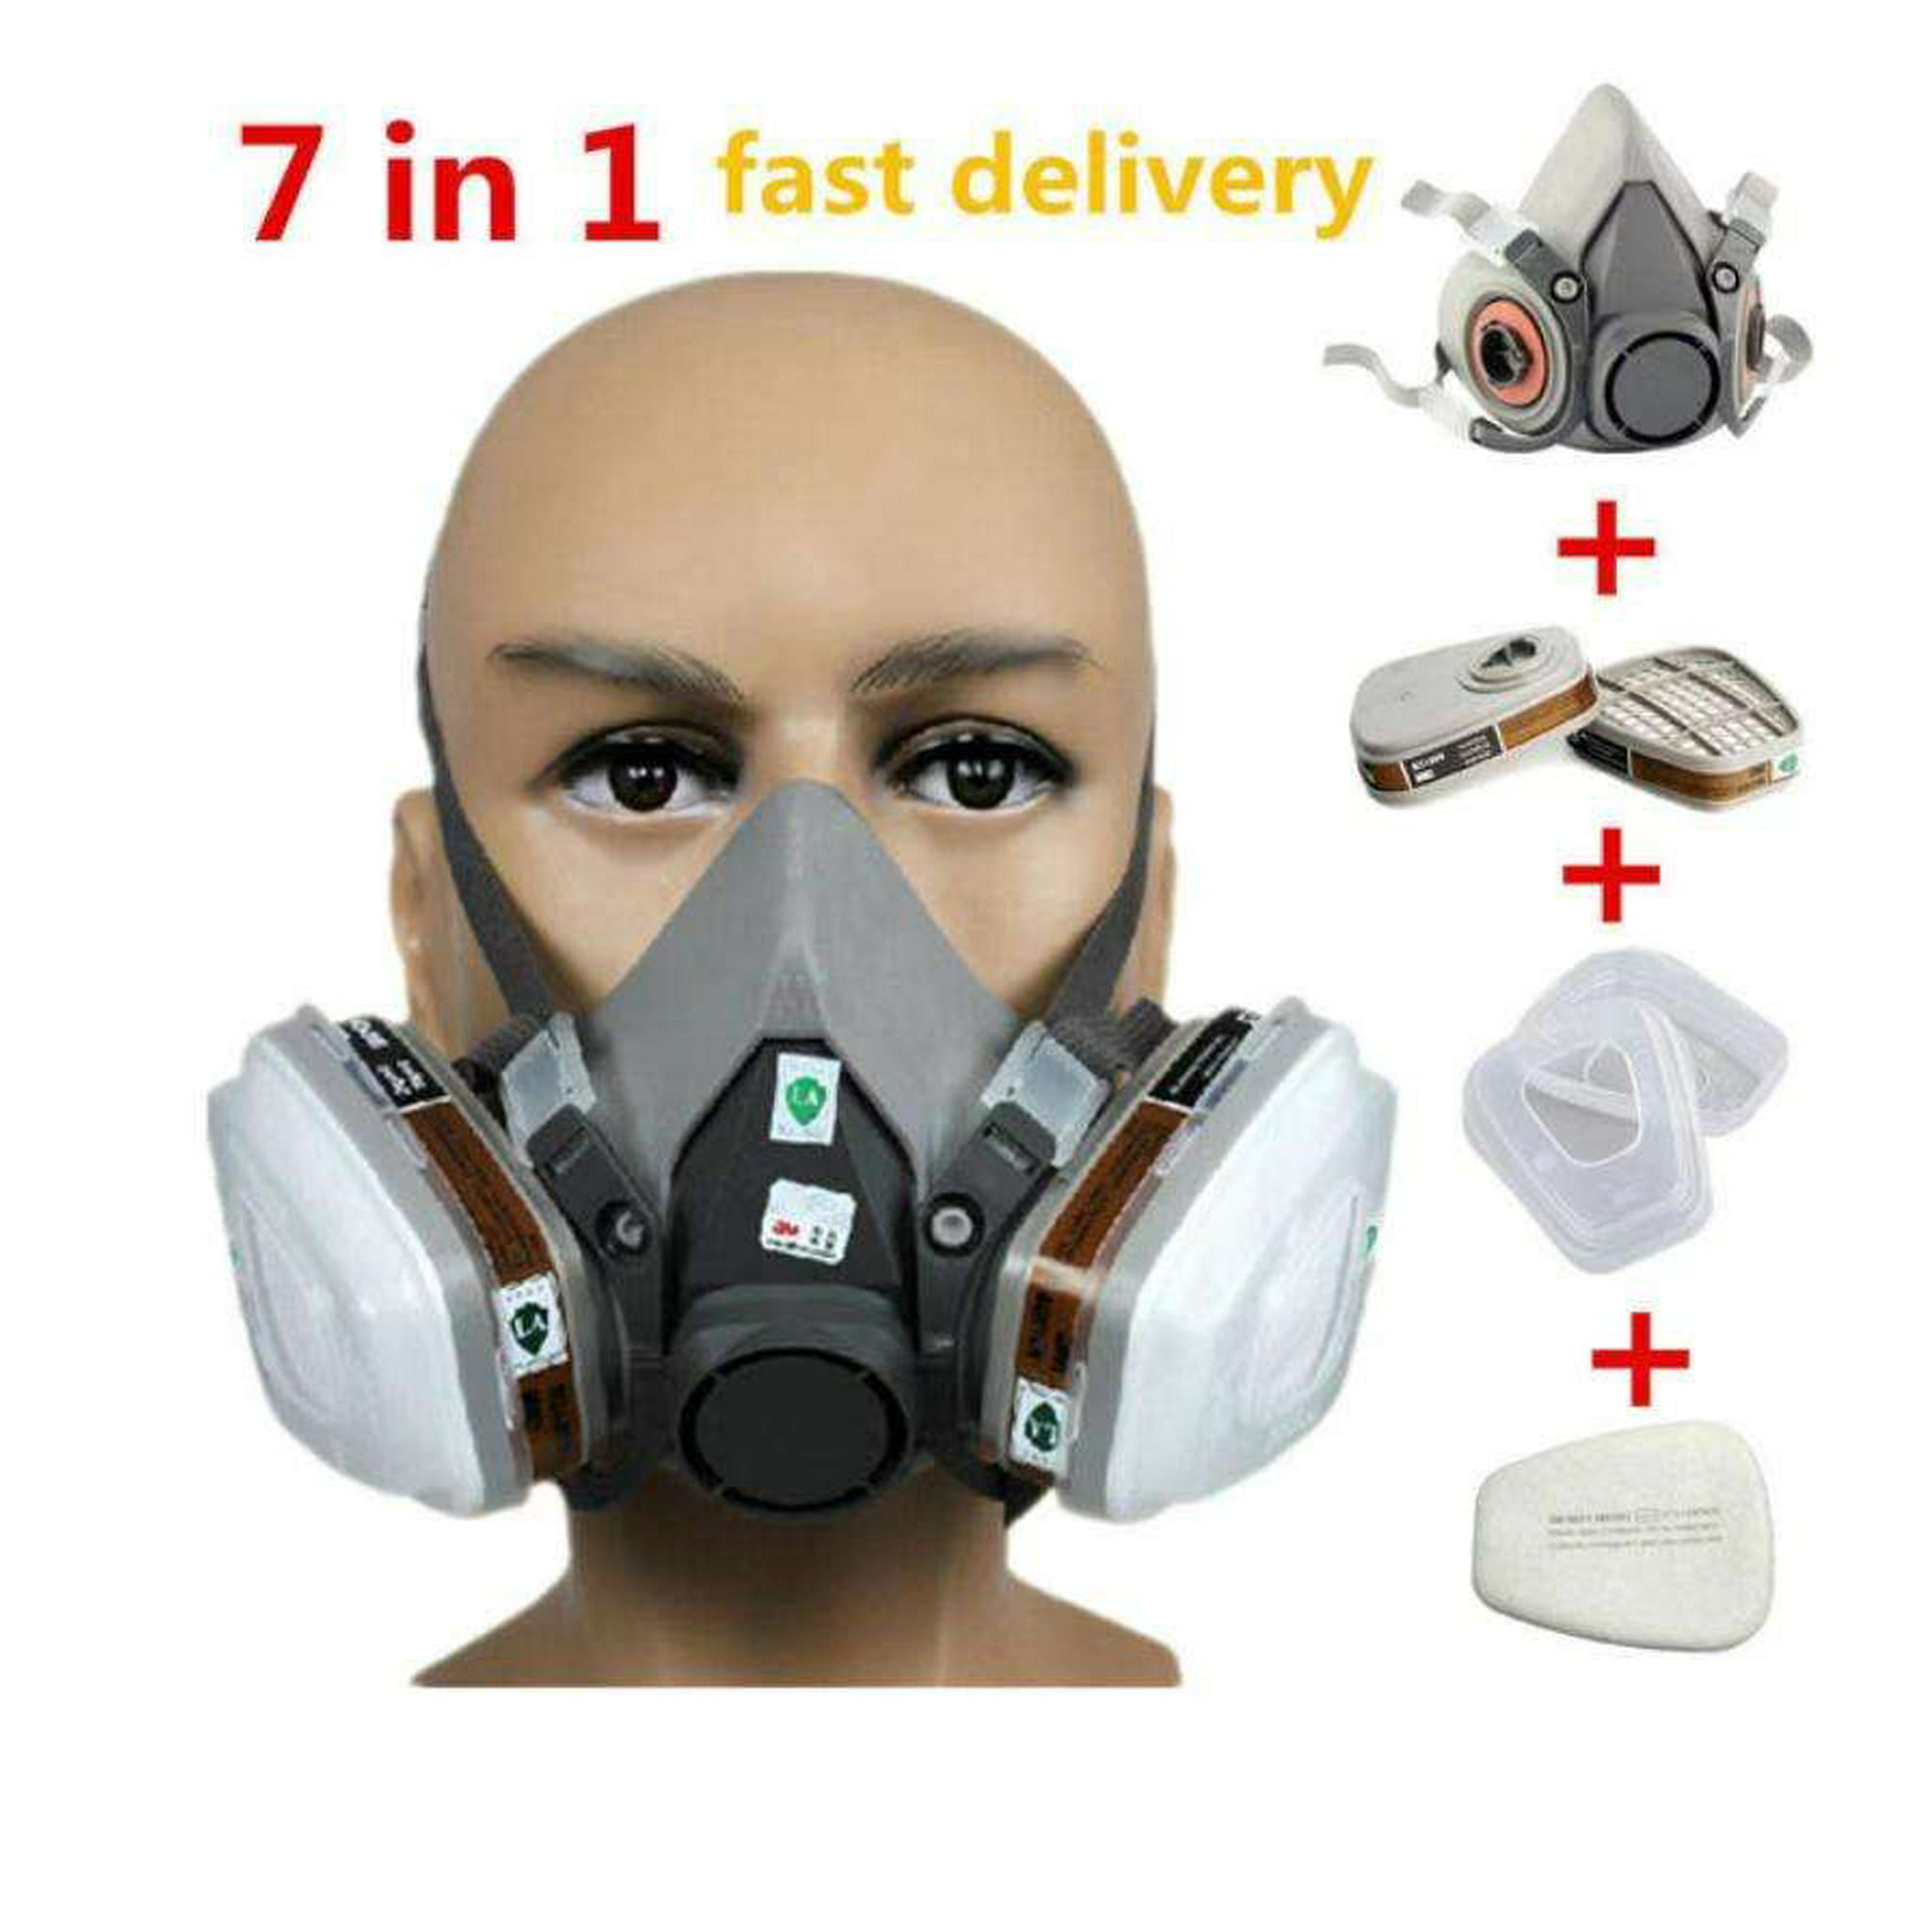 Máscara respiradora Máscara de gas de media cara Máscara de gas 6200  Máscara de gas con filtros/gafas de seguridad Respirador de pintura para